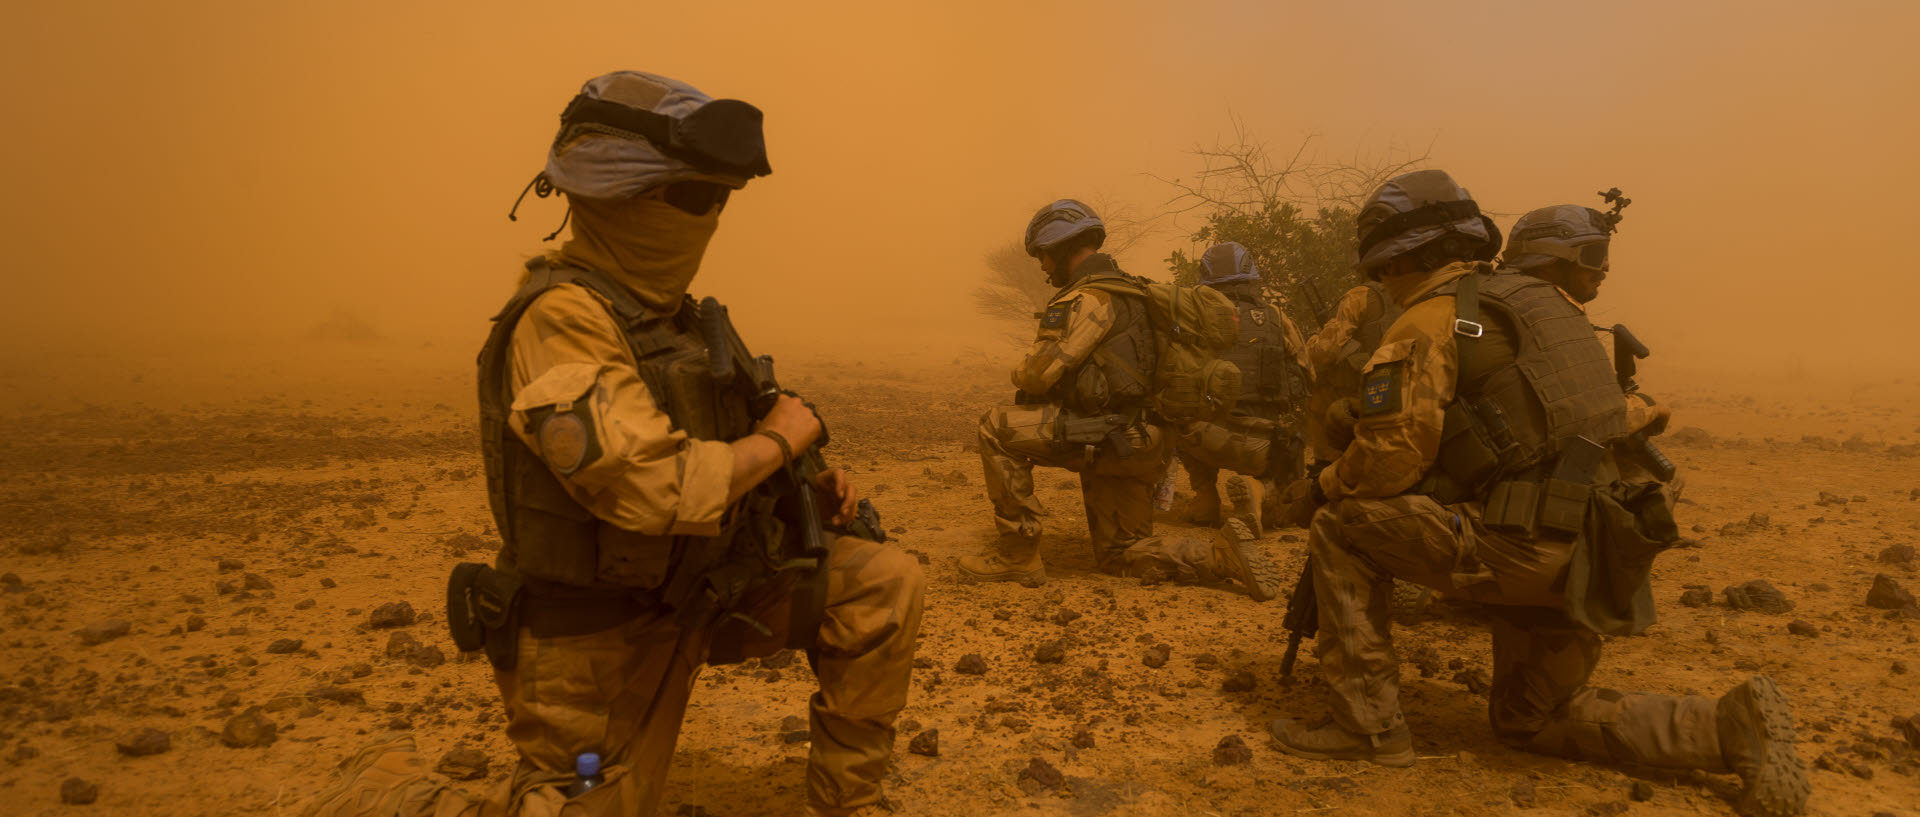 Sista delen av Folon, en operation i centrala Mali där spaningskompaniet ur Mali 09 samverkar lokalt för att inhämta underrättelseunderlag och visa närvaro i östra Moptiregionen söder om Timbuktu. Operationen syftar till att lugna etniska konflikter i området och visa lokalbefolkningen att FN finns närvarande även i mer avlägsna områden. Den sista av fyra delar i operationen är ett eskortuppdrag där spaningskompaniet har som uppgift att rekognocera helikopterlandningsplatser, möteslokaler samt skydda mötet mellan civila FN-representater och lokala befattningshavare i Dinangouruområdet.

Operationen Folon är också en logistisk utmaning som tvingar förbandet att med hjälp av andra nationers transportflyg via en luftbro flyga sina arton pansarterrängbilar med släp från Timbuktu till Sevaré varifrån operationen sedan utgick. Från Sevaré till det fjärde operationsområdet är det ytterligare två dagars fordonsmarsch genom olika terrängtyper som tvingar ner hastigheten till mellan femton och trettio kilometer i timmen.

IA, den svenska spaningsgrupp som understött närskyddet av mötet mellan FN och lokalbefolkning avtransporteras med hjälp av en kanadensisk chinookhelikopter. De svenska soldaterna sveps in i damm som helikopterns rotorer piskar upp från marken, sk 